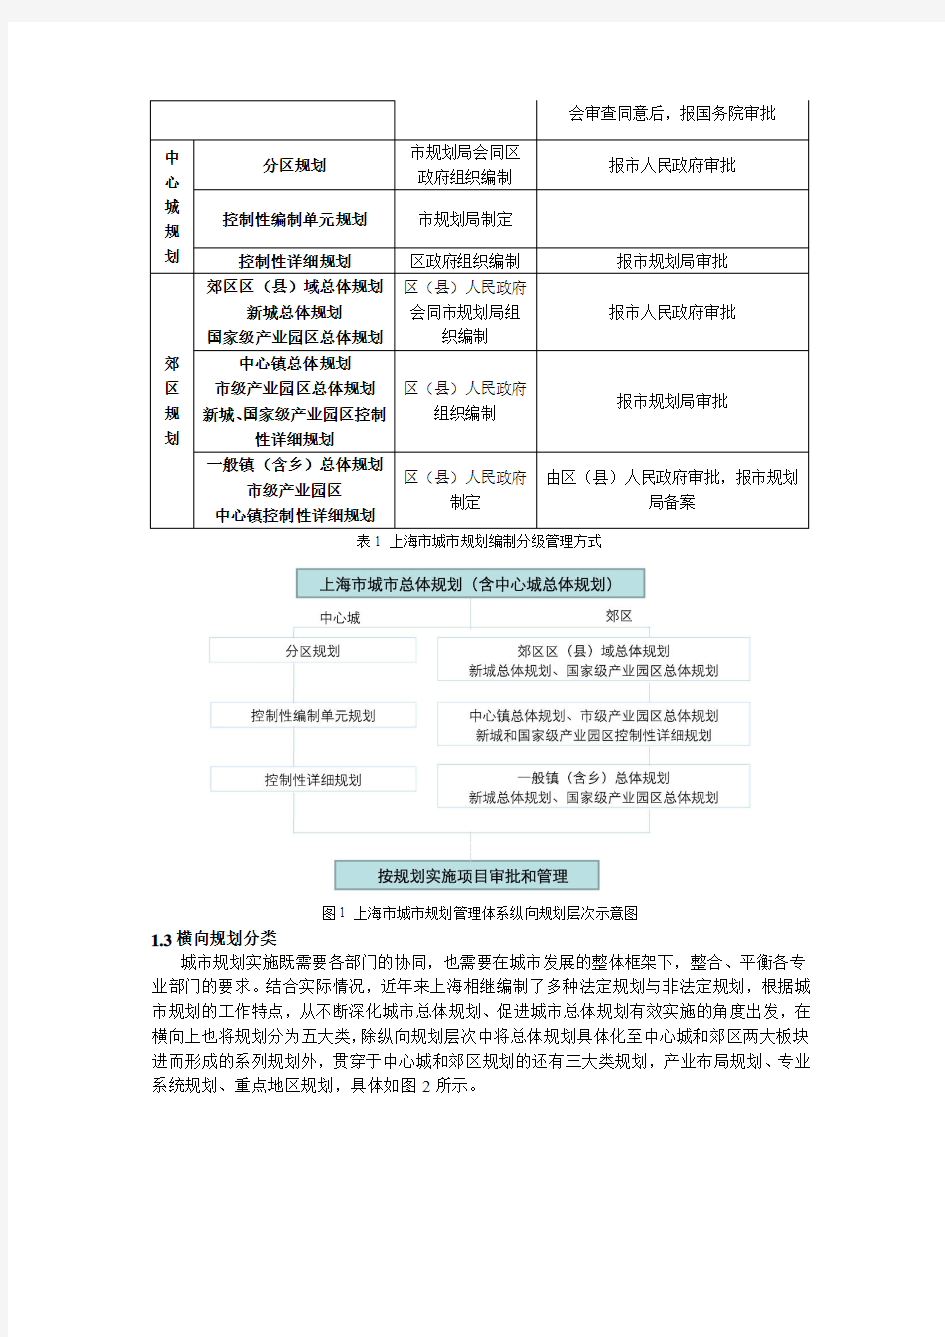 上海城市规划编制体系